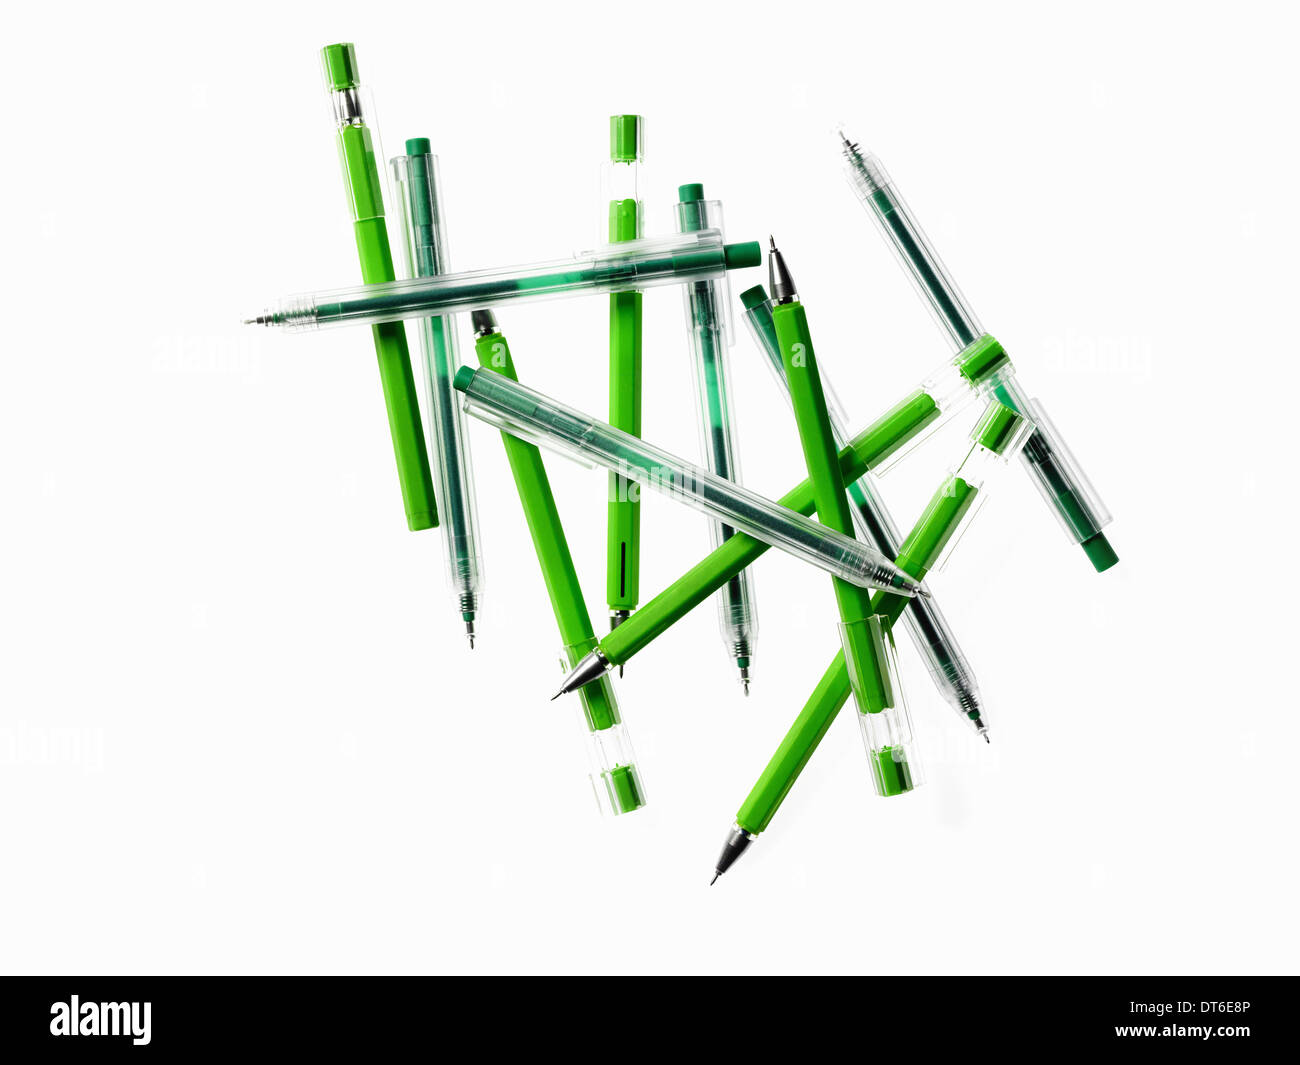 Il verde delle forniture per ufficio. Un gruppo di penne, colori blu e verde. Foto Stock